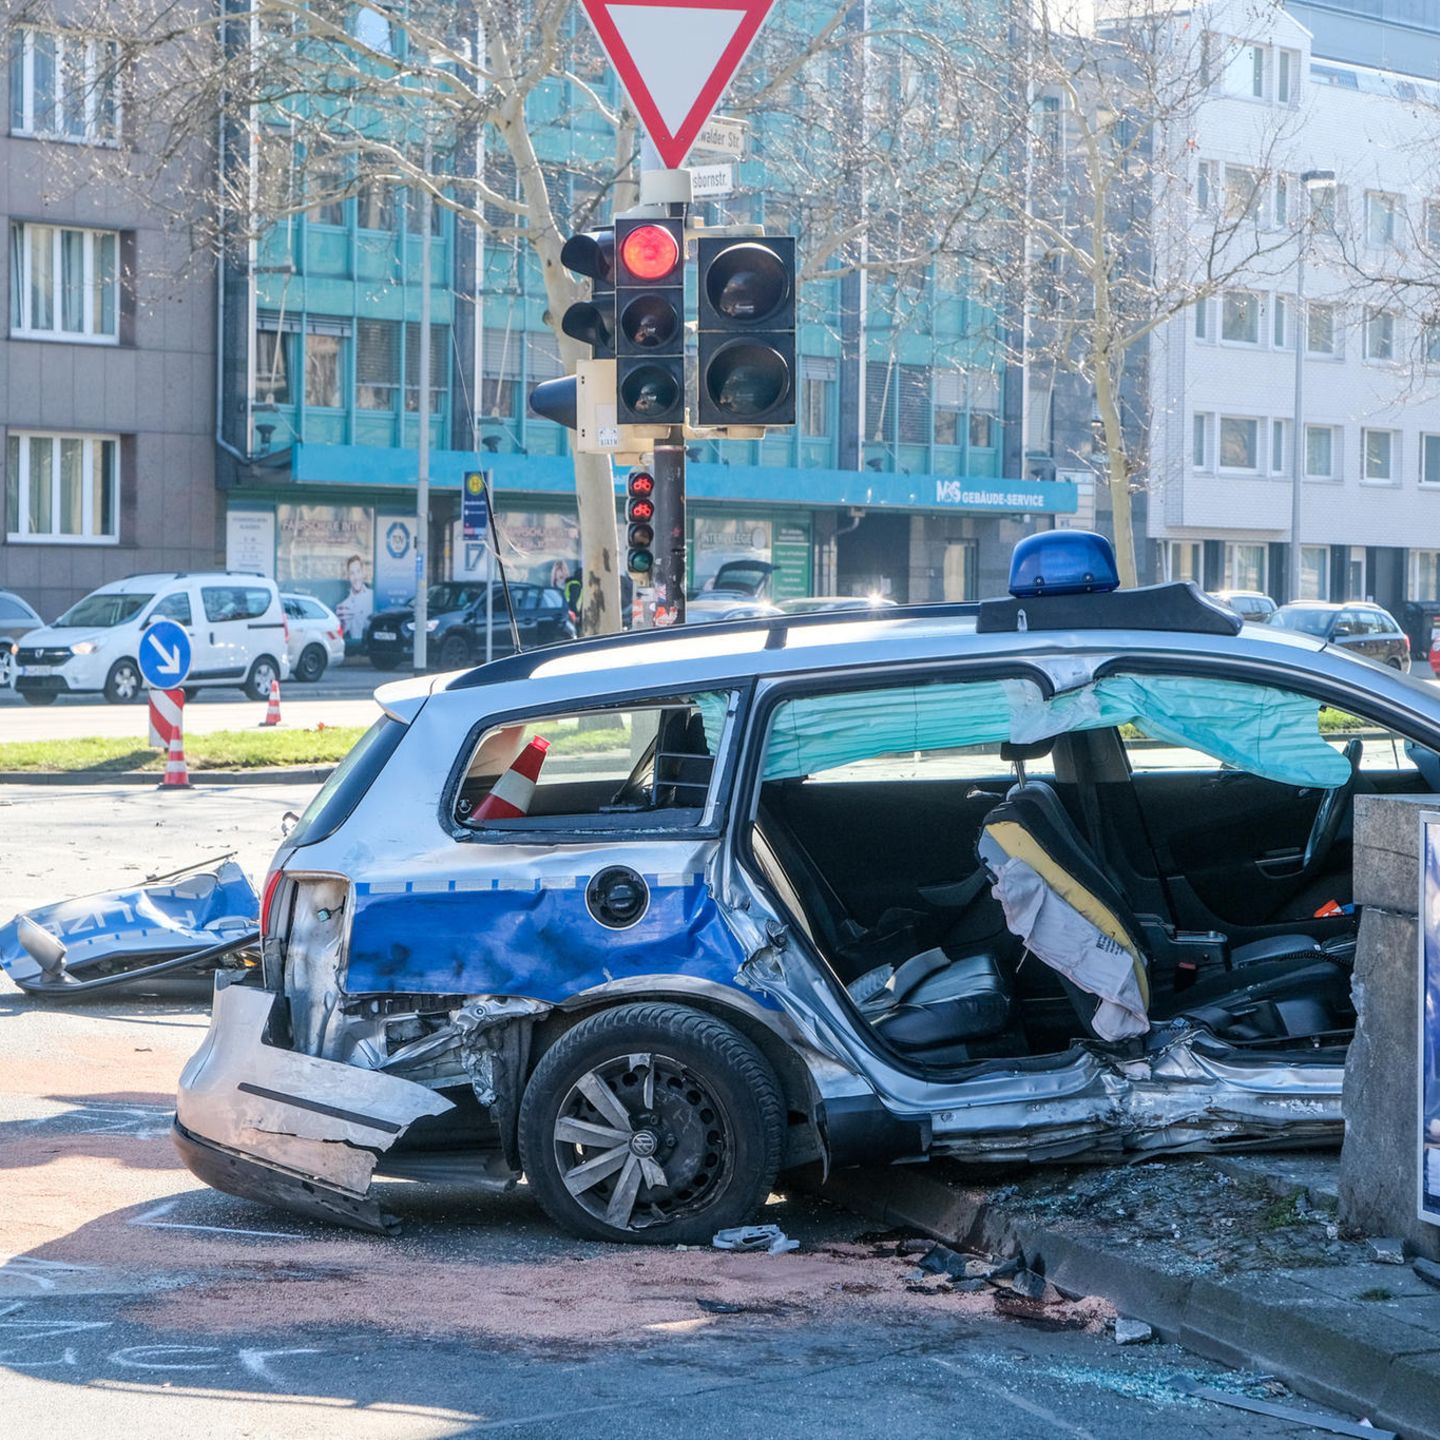 Polizei zieht Auto mit falschem Blaulicht aus dem Verkehr